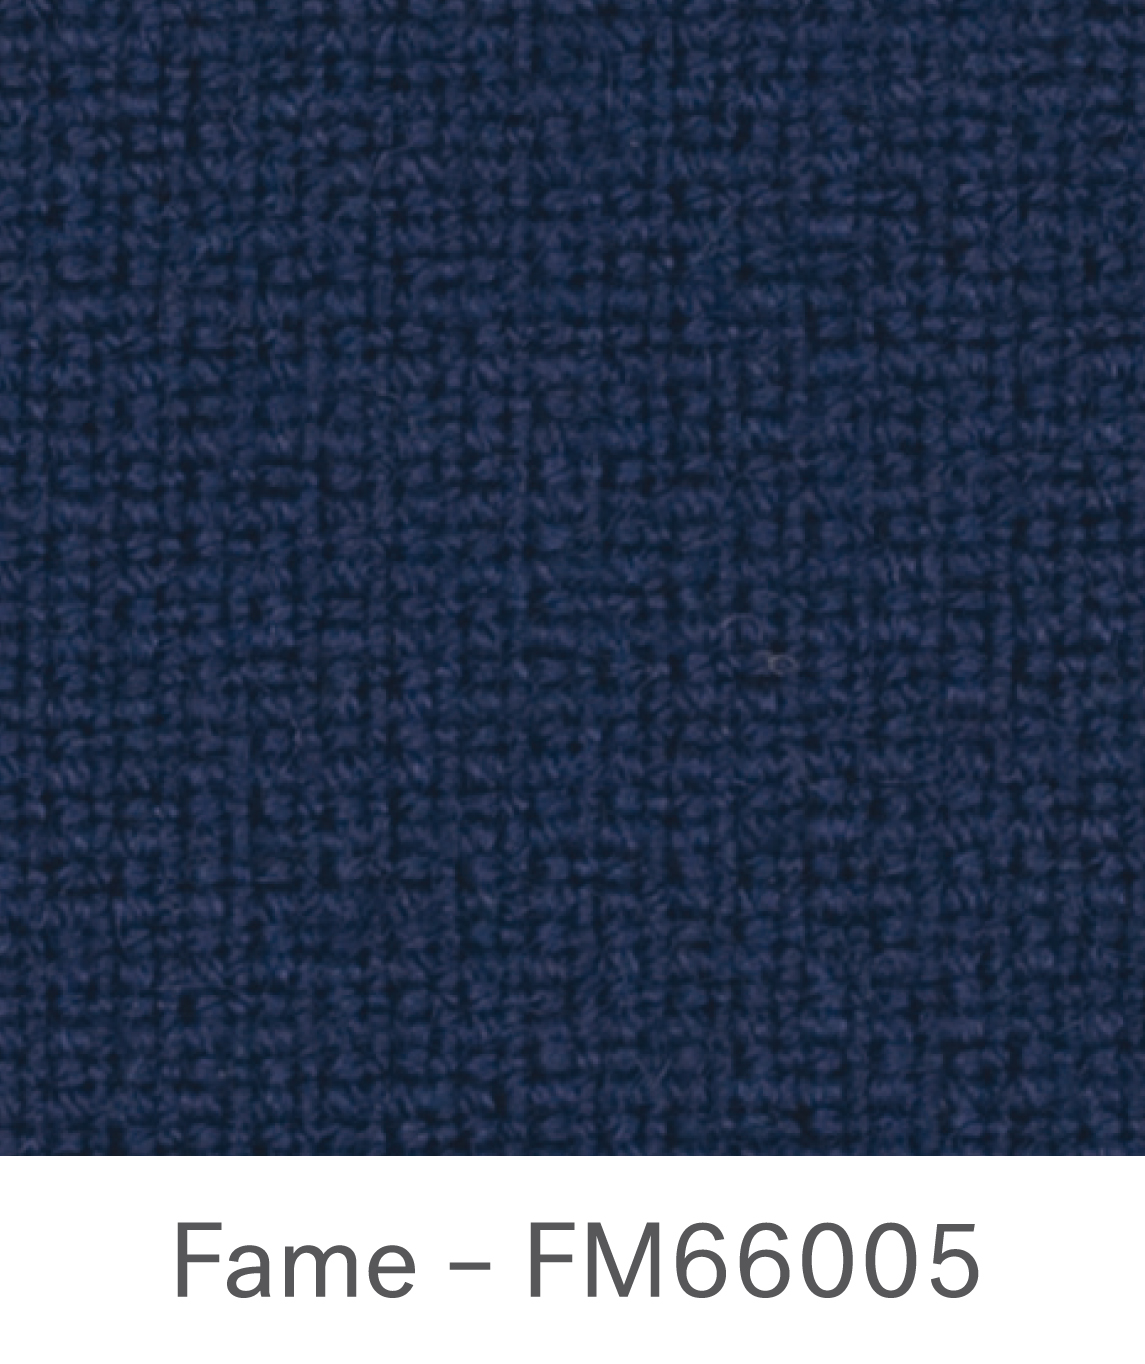 Fame FM66005